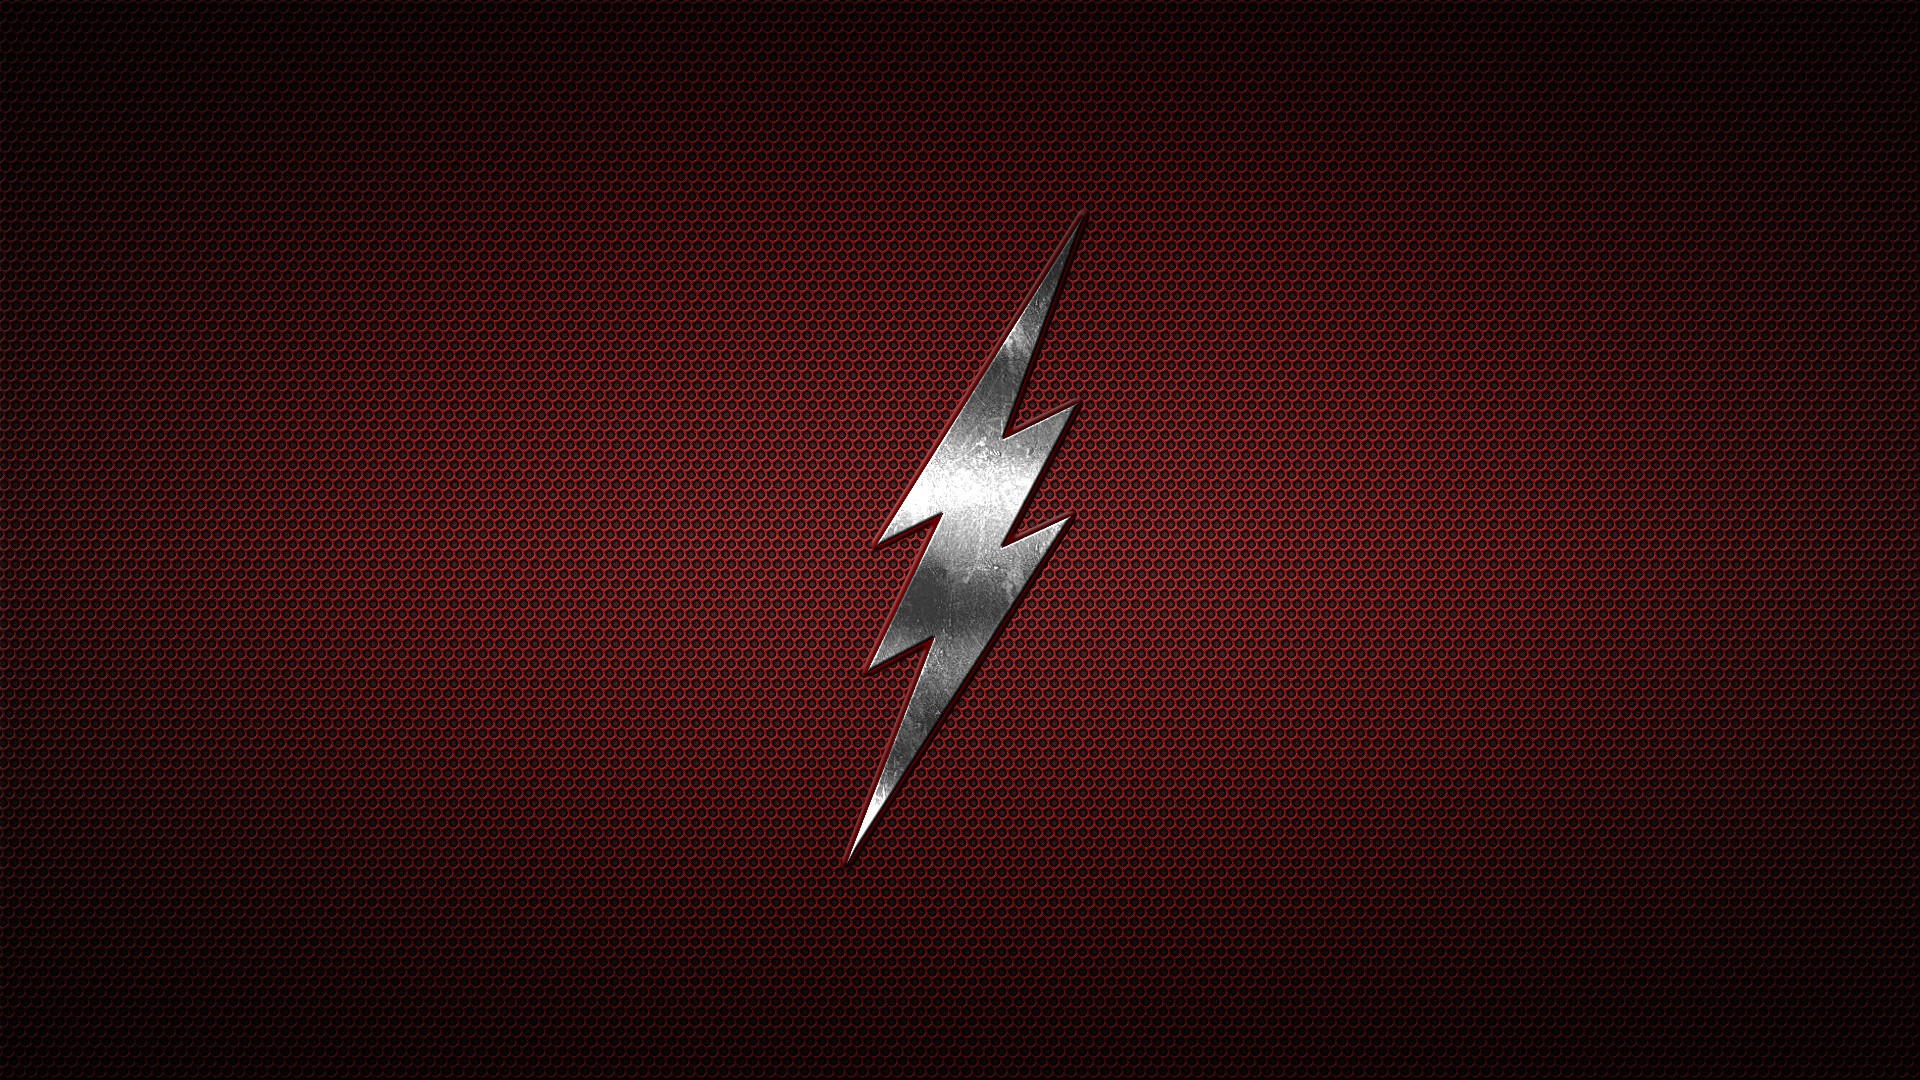 The Flash Flash Logo Minimalism 1920x1080